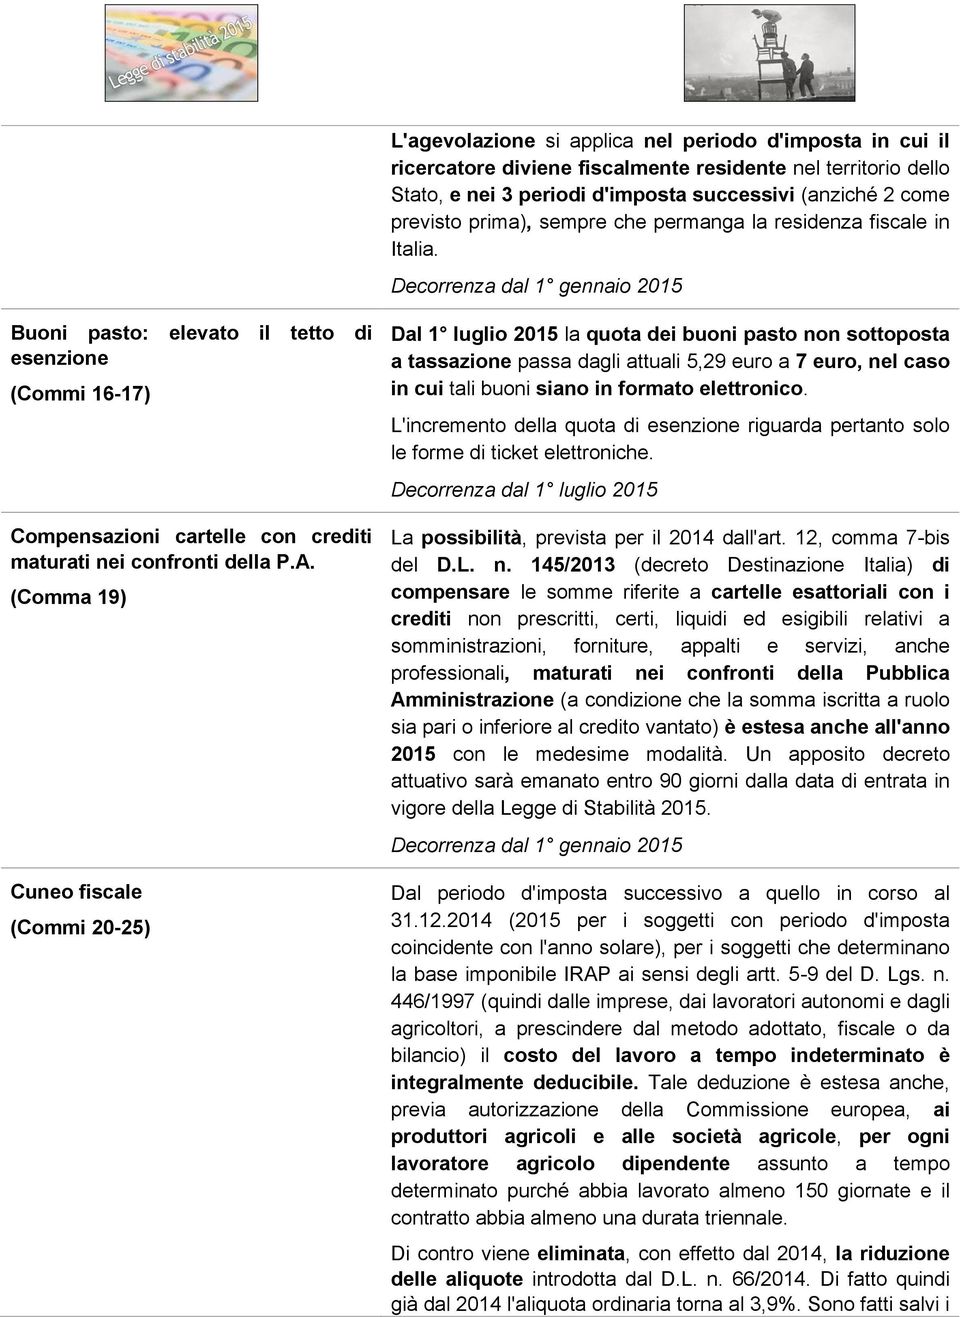 (Comma 19) Cuneo fiscale (Commi 20-25) Dal 1 luglio 2015 la quota dei buoni pasto non sottoposta a tassazione passa dagli attuali 5,29 euro a 7 euro, nel caso in cui tali buoni siano in formato